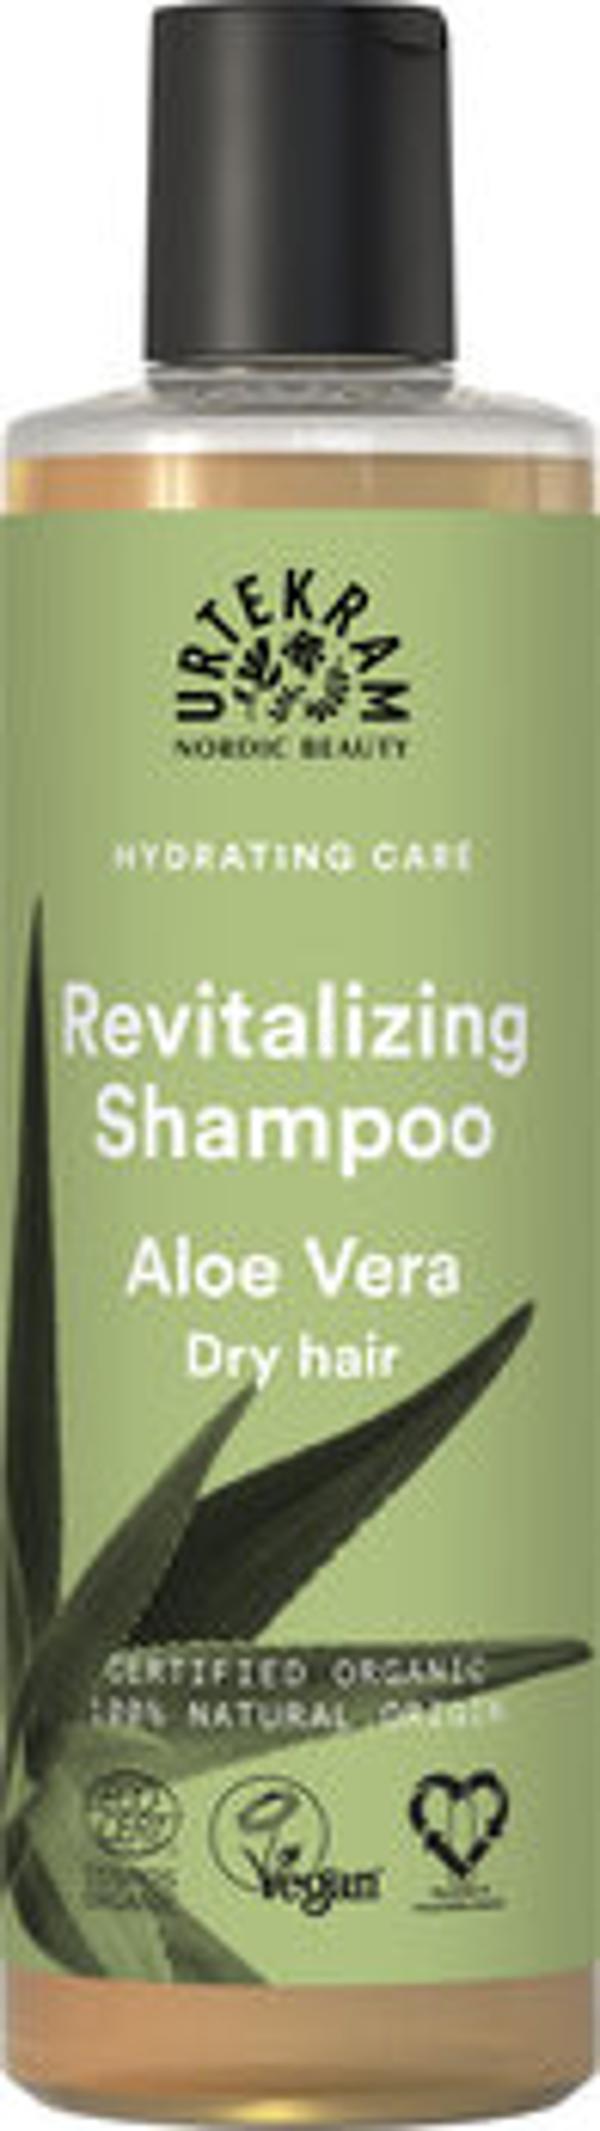 Produktfoto zu Revitalizing Shampoo Aloe Vera